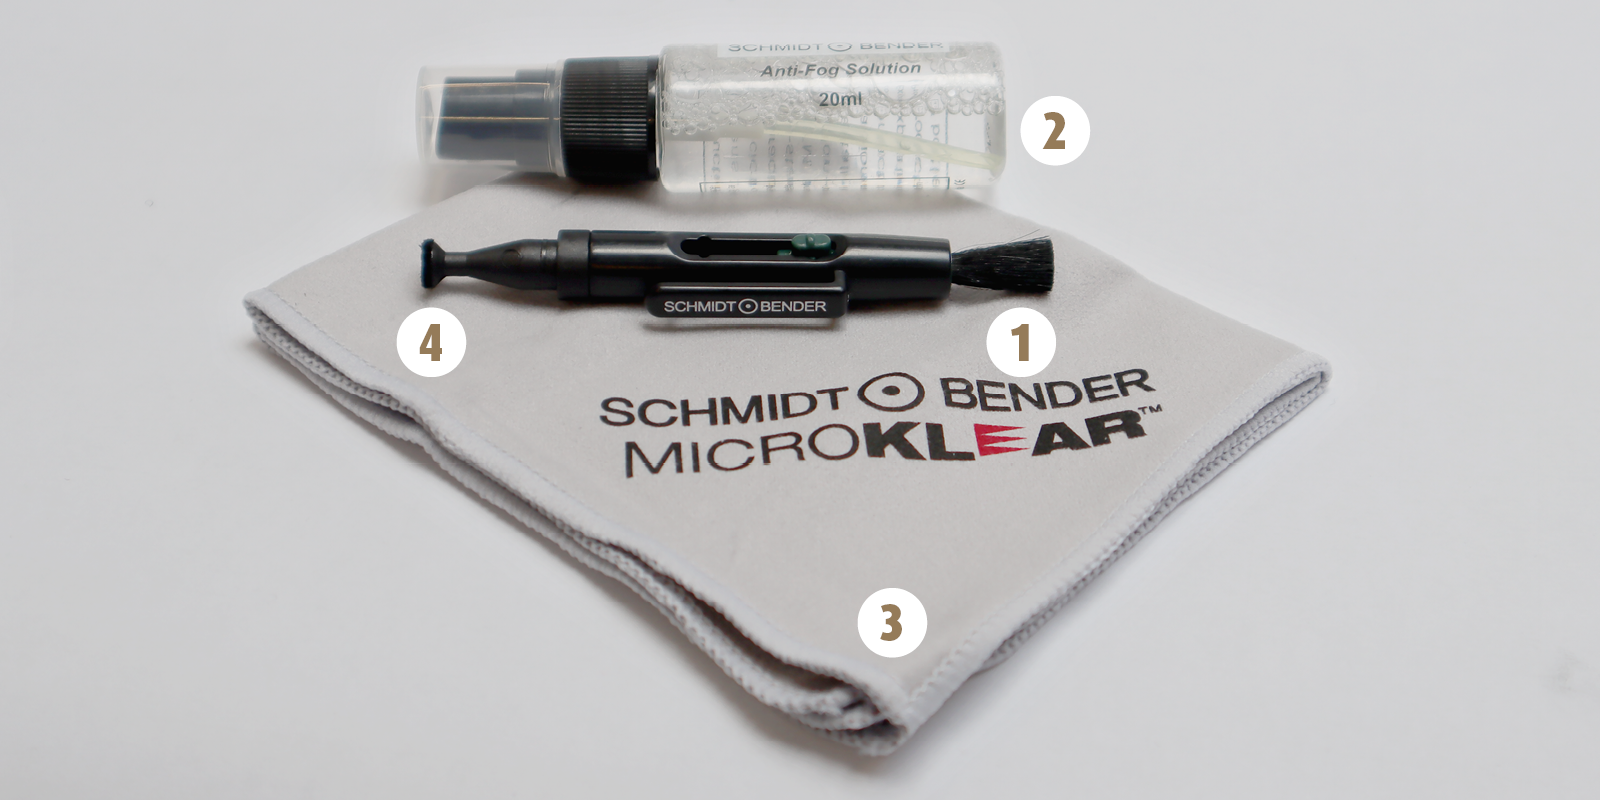 Aperçu de tous les produits du kit de nettoyage : 1. brosse du LensPen, 2. spray de nettoyage, 3. chiffon en microfibre et 4. tampon en microfibre du LensPen